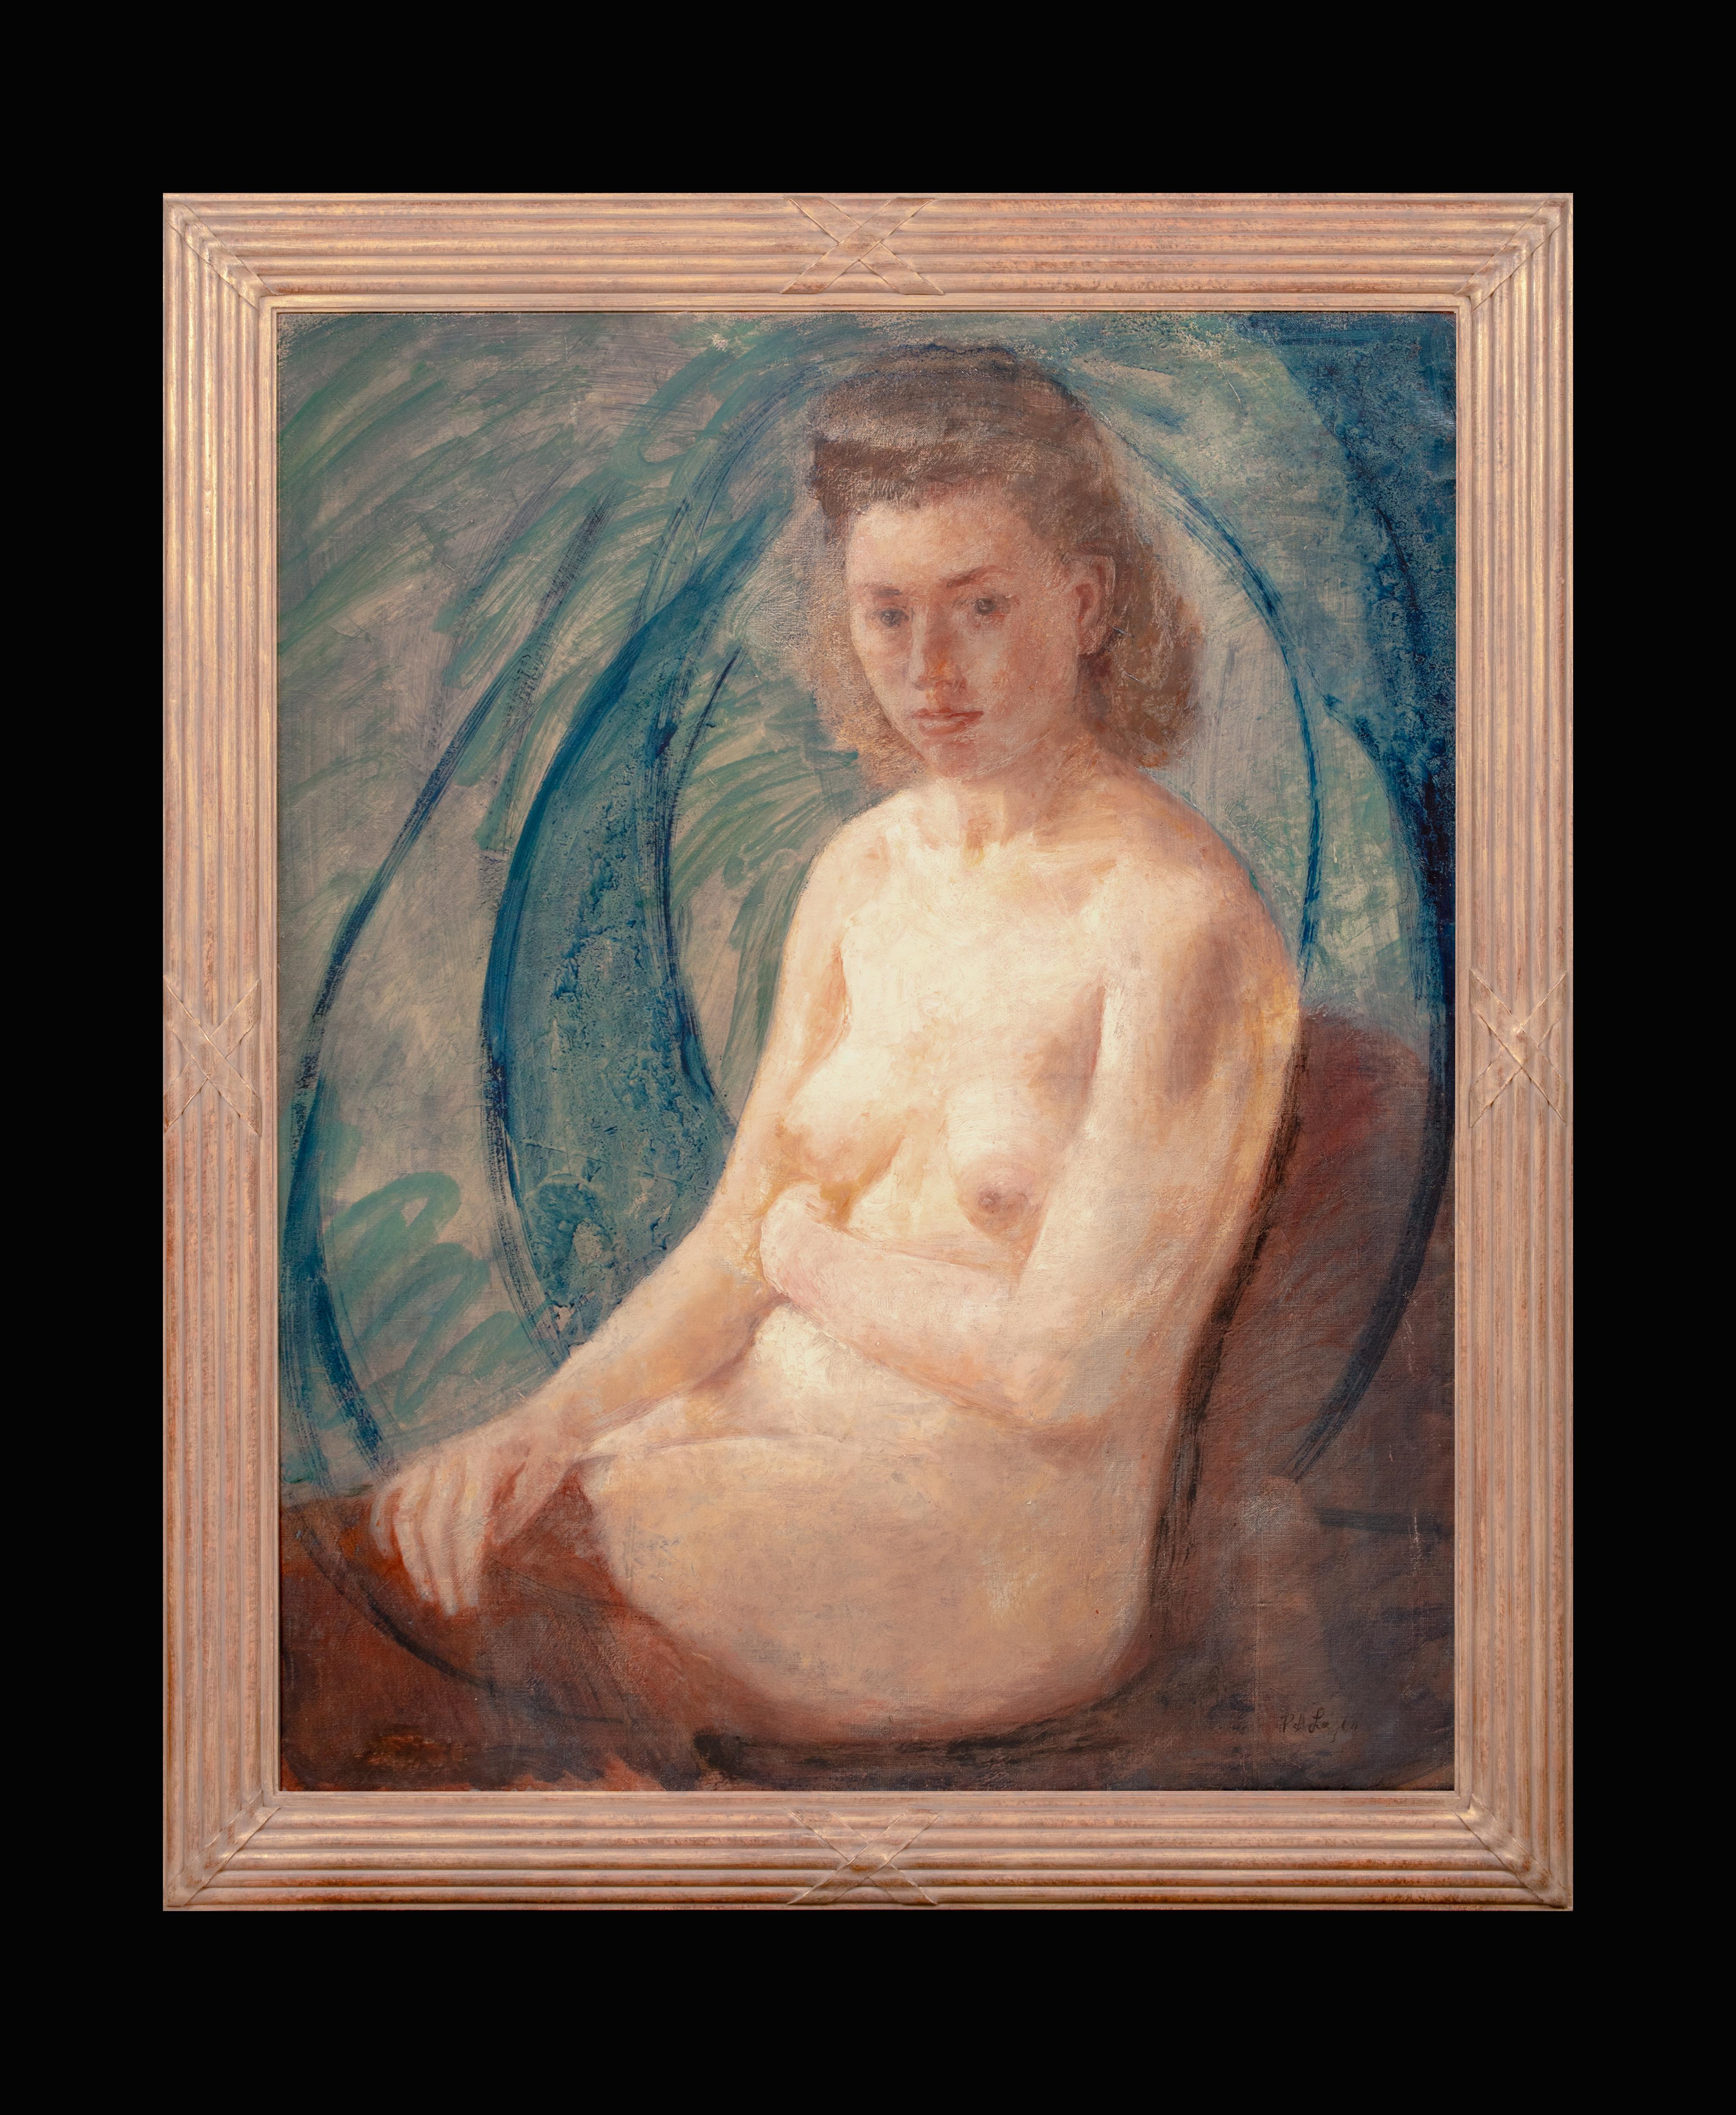 Portrait d'une femme nue, vers 1900  par Philip de László (1869-1937)  - Painting de Philip de Laszlo